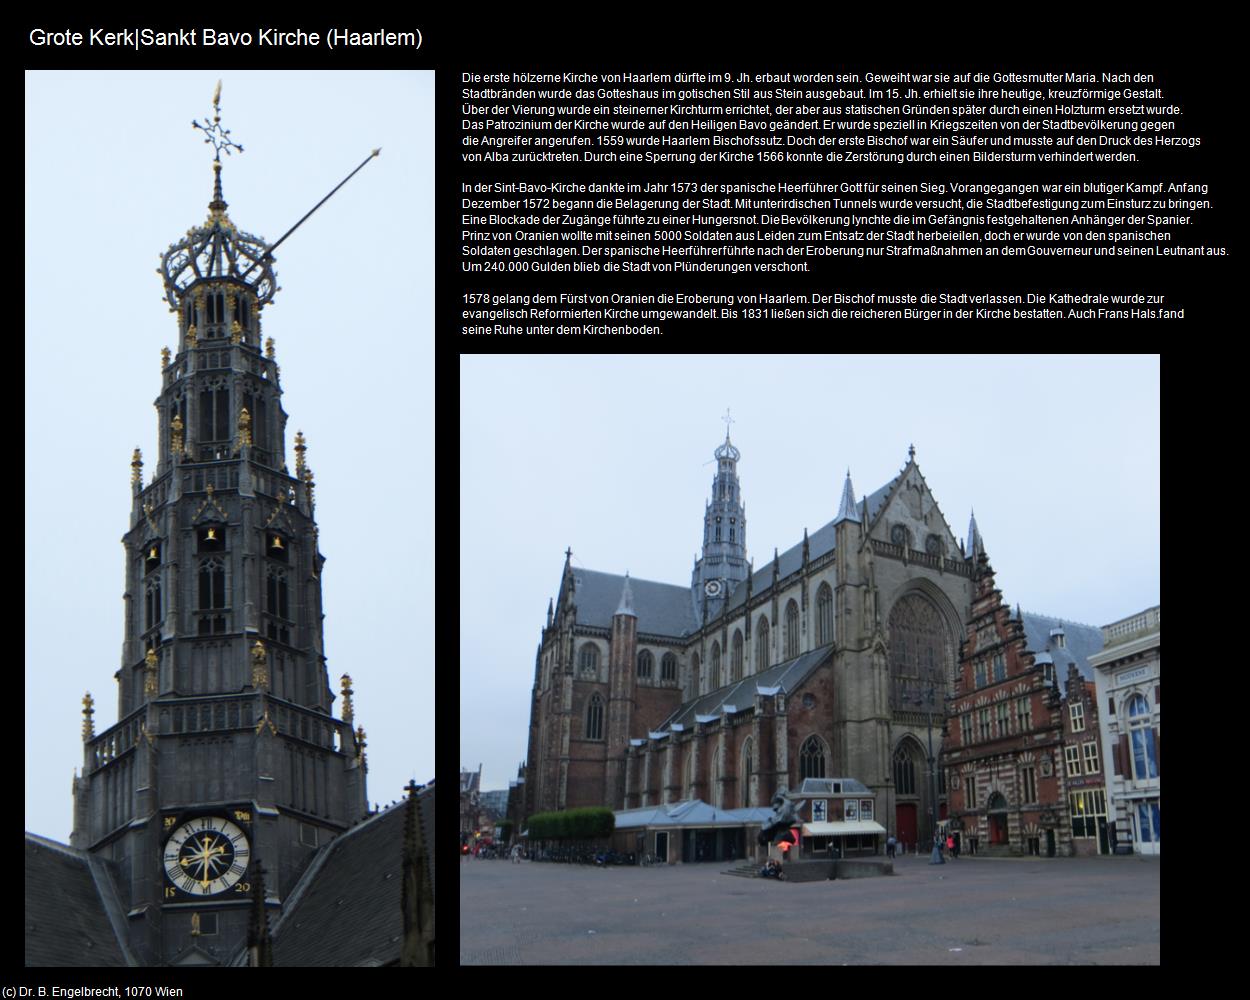 Grote Kerk|Sankt Bavo Kirche (Haarlem) in Kulturatlas-NIEDERLANDE